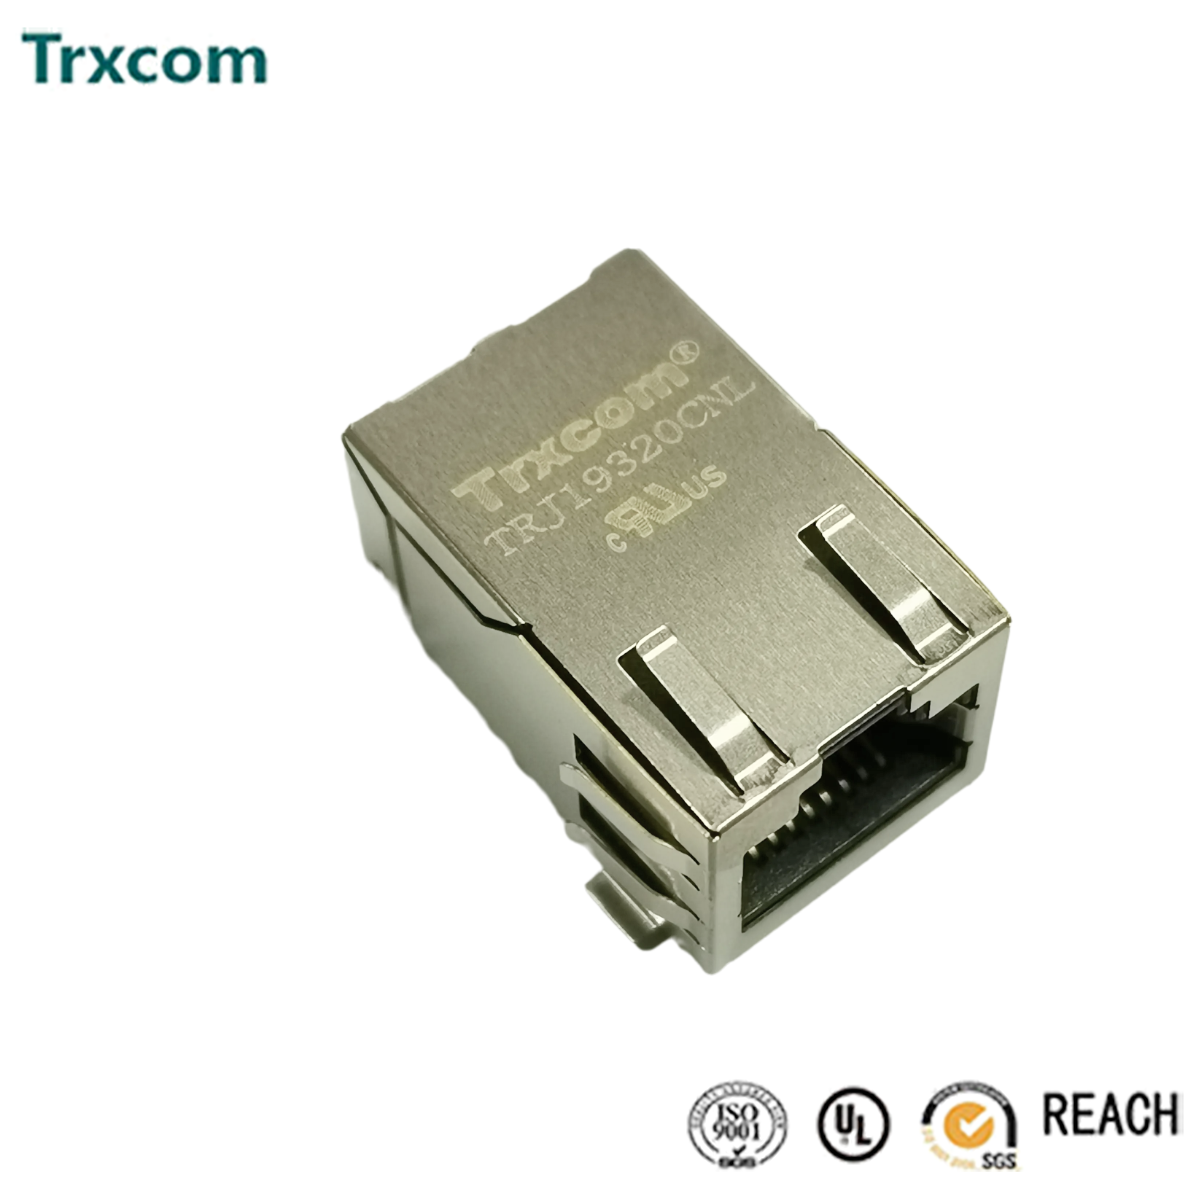 泰瑞康trxcom网络通讯器件rj45连接头品质保议定速发